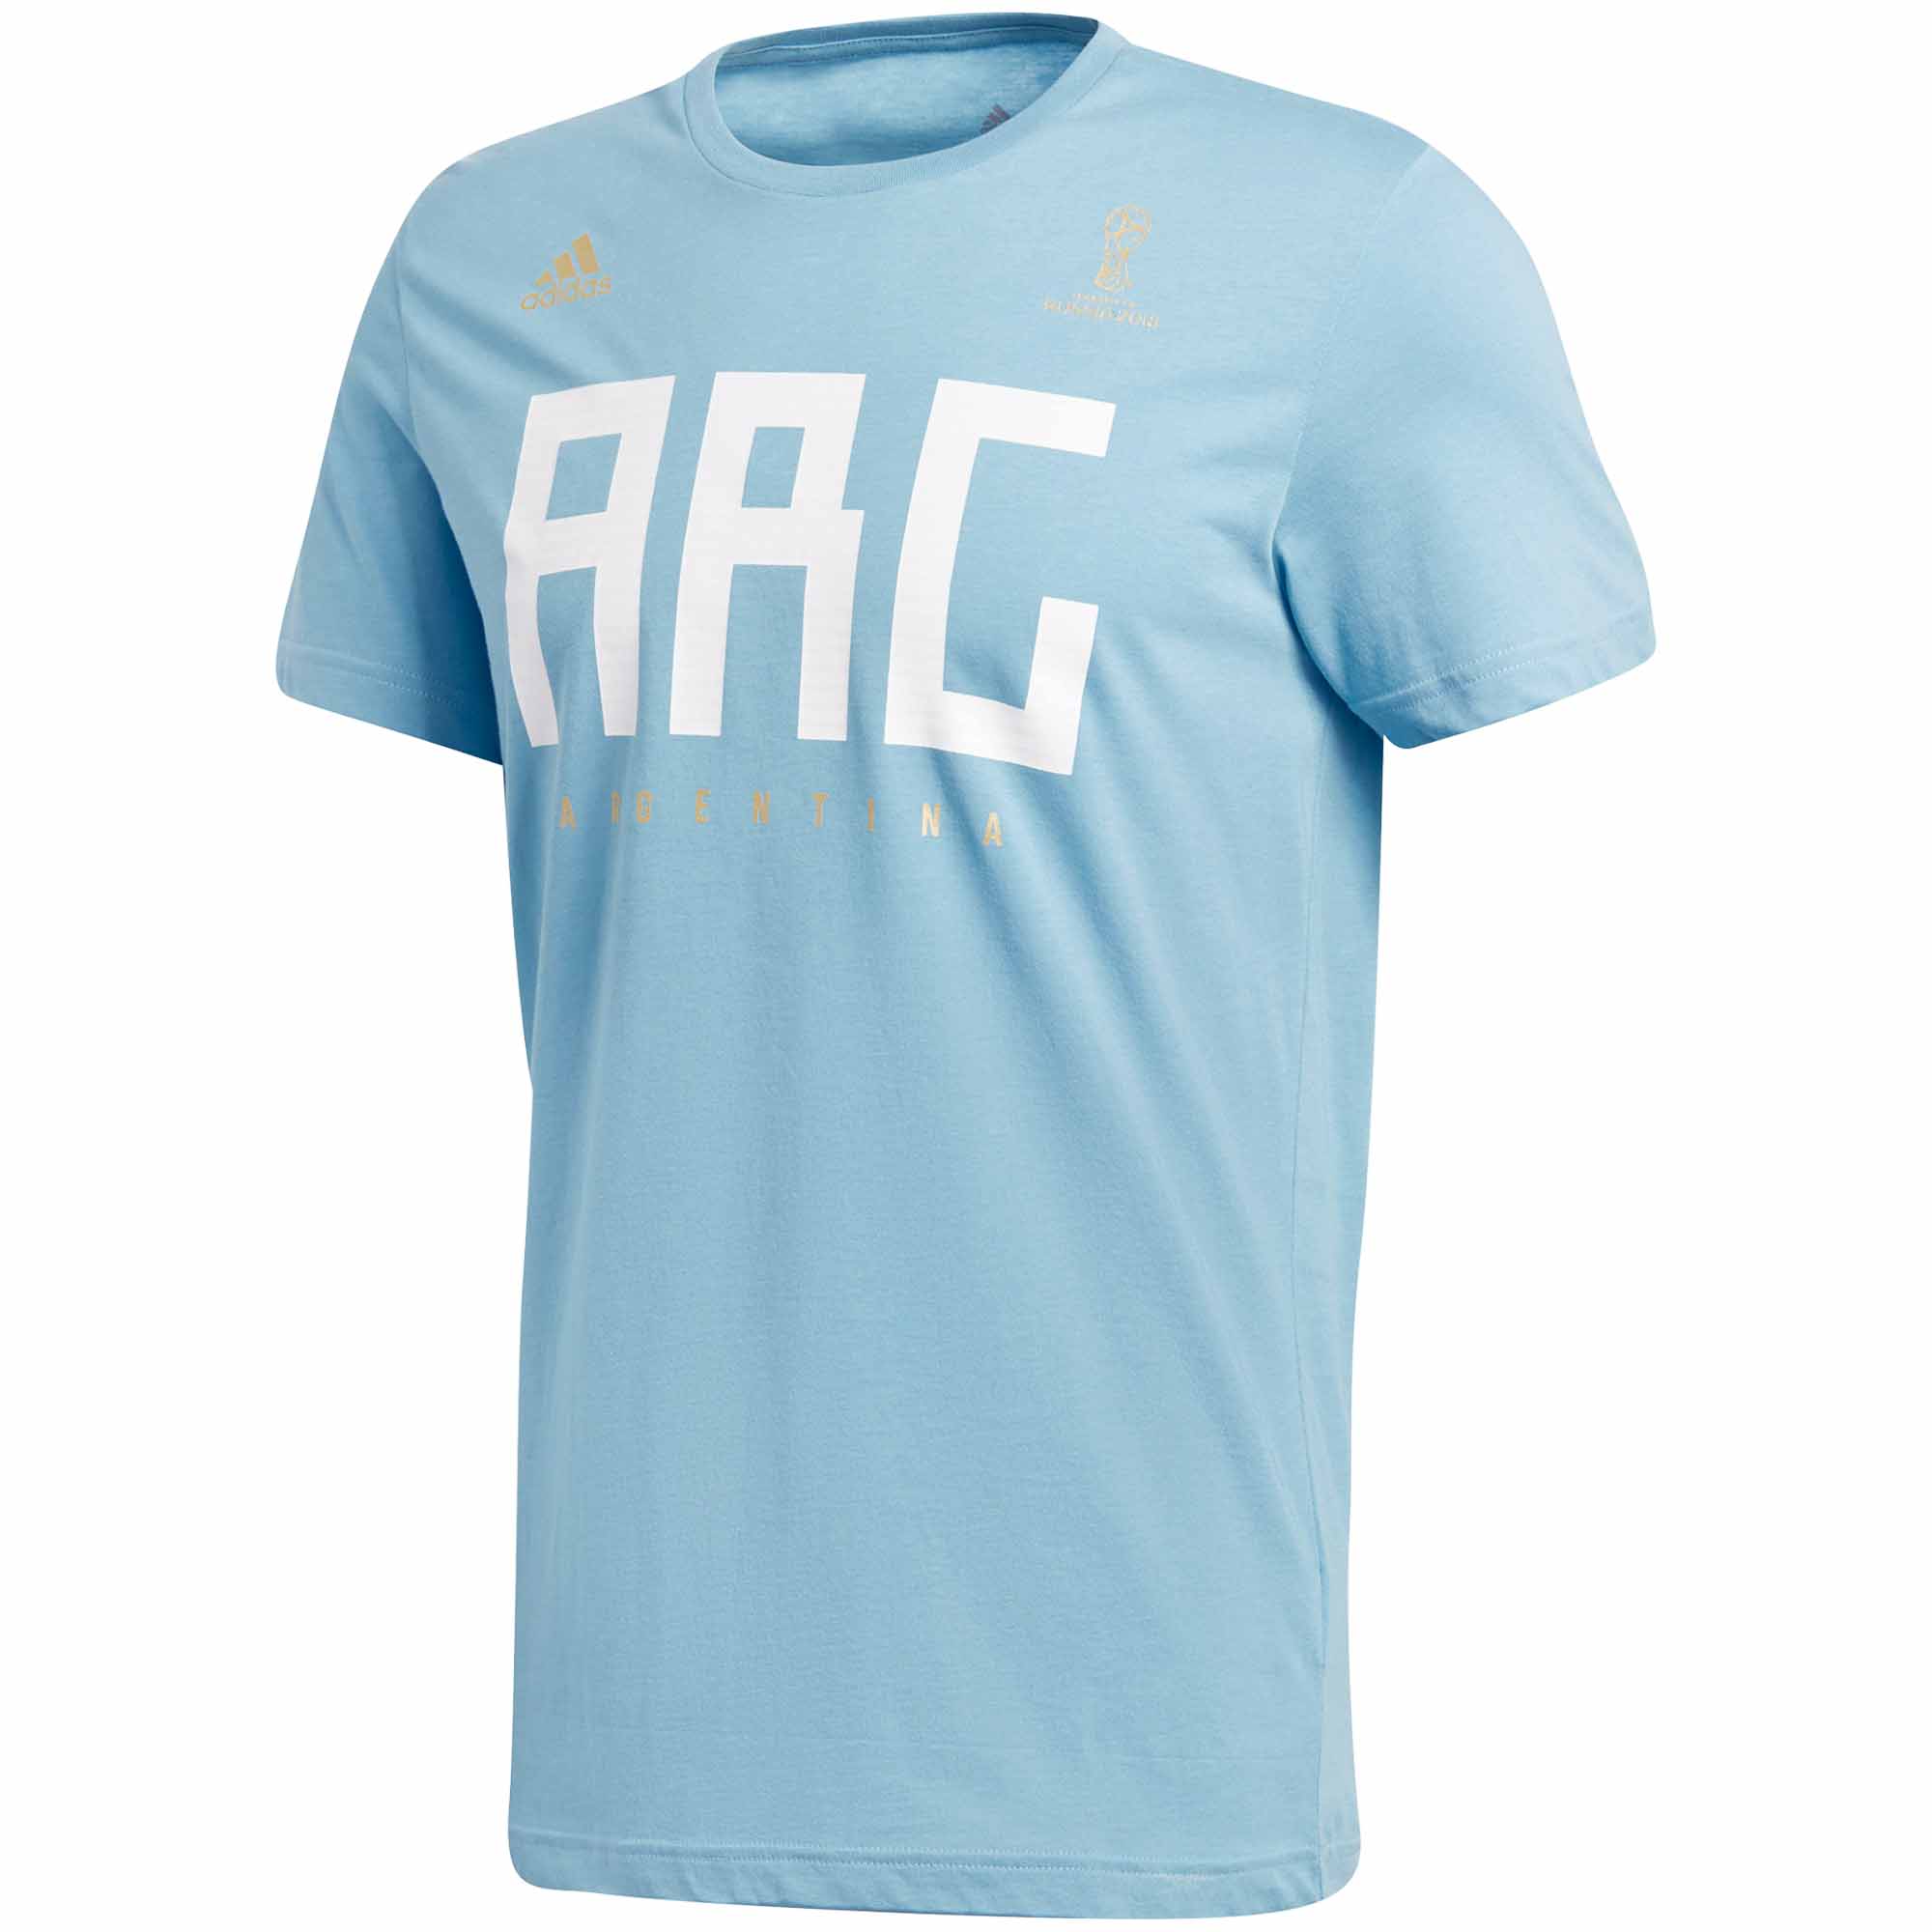 t shirt adidas argentina